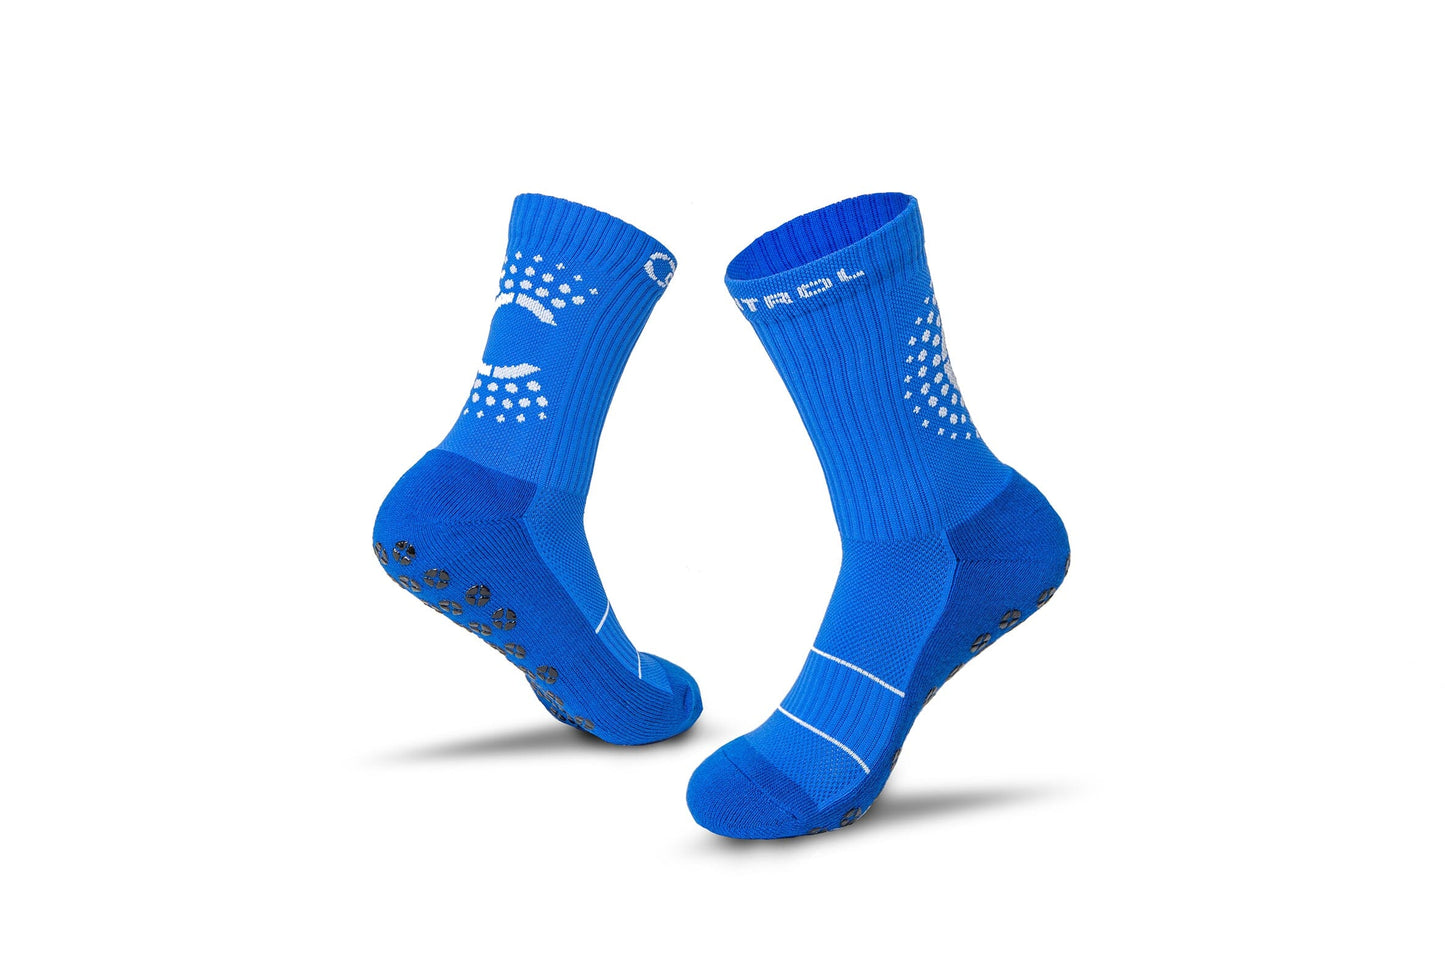 Control Sox 2.0 - Royal Blue Grip Socks Control Sox S/M (US 5-8.5) 